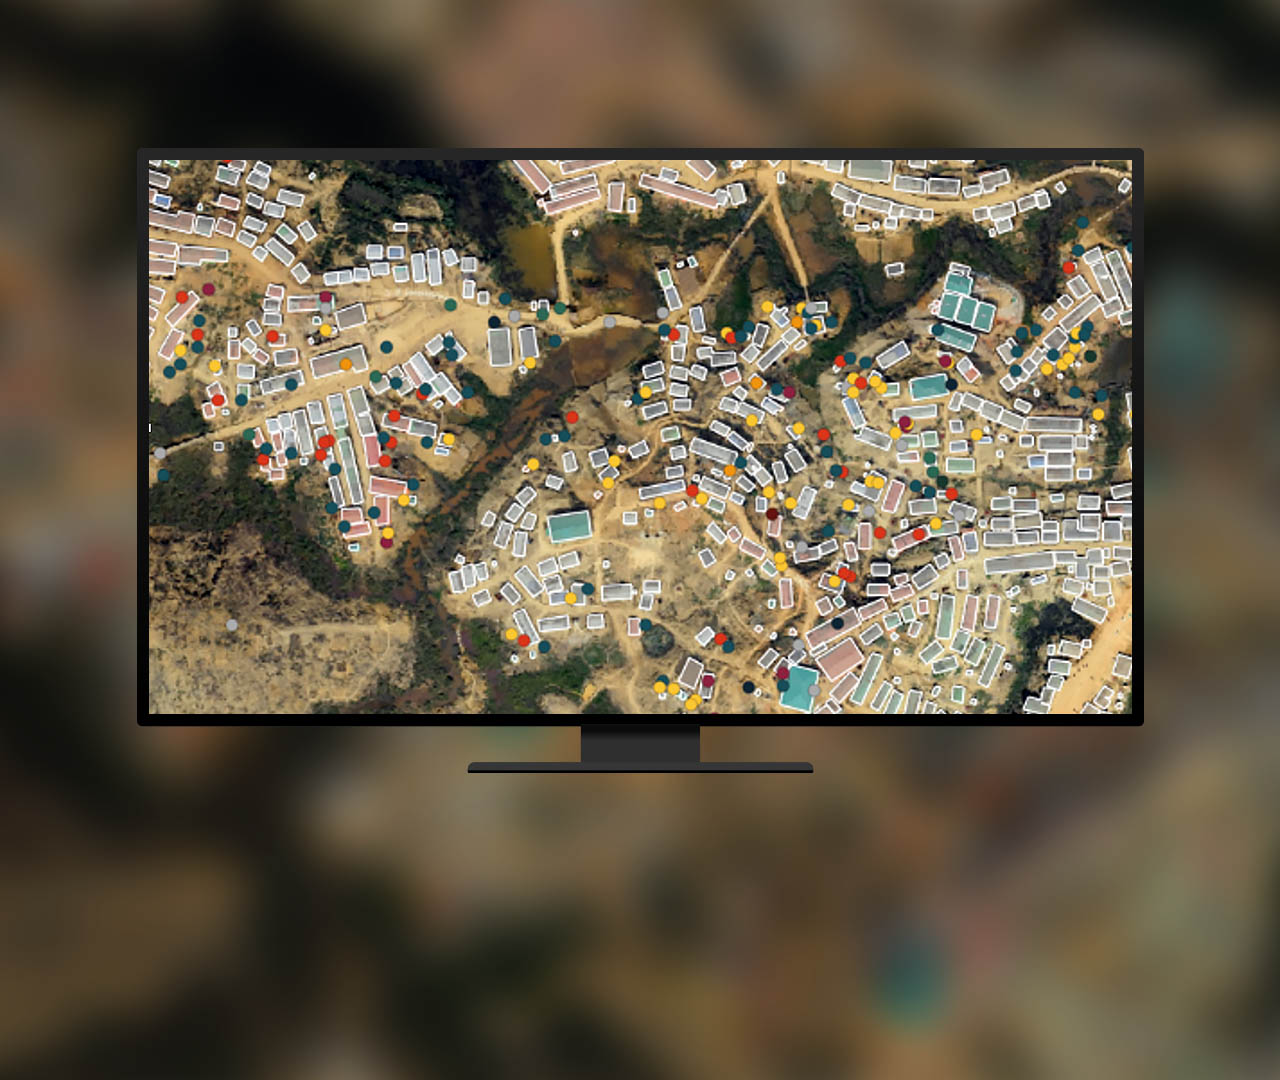 Vista aérea de un área suburbana que utiliza IA para clasificar objetos como edificios y coches, marcados por rectángulos blancos y puntos multicolores.